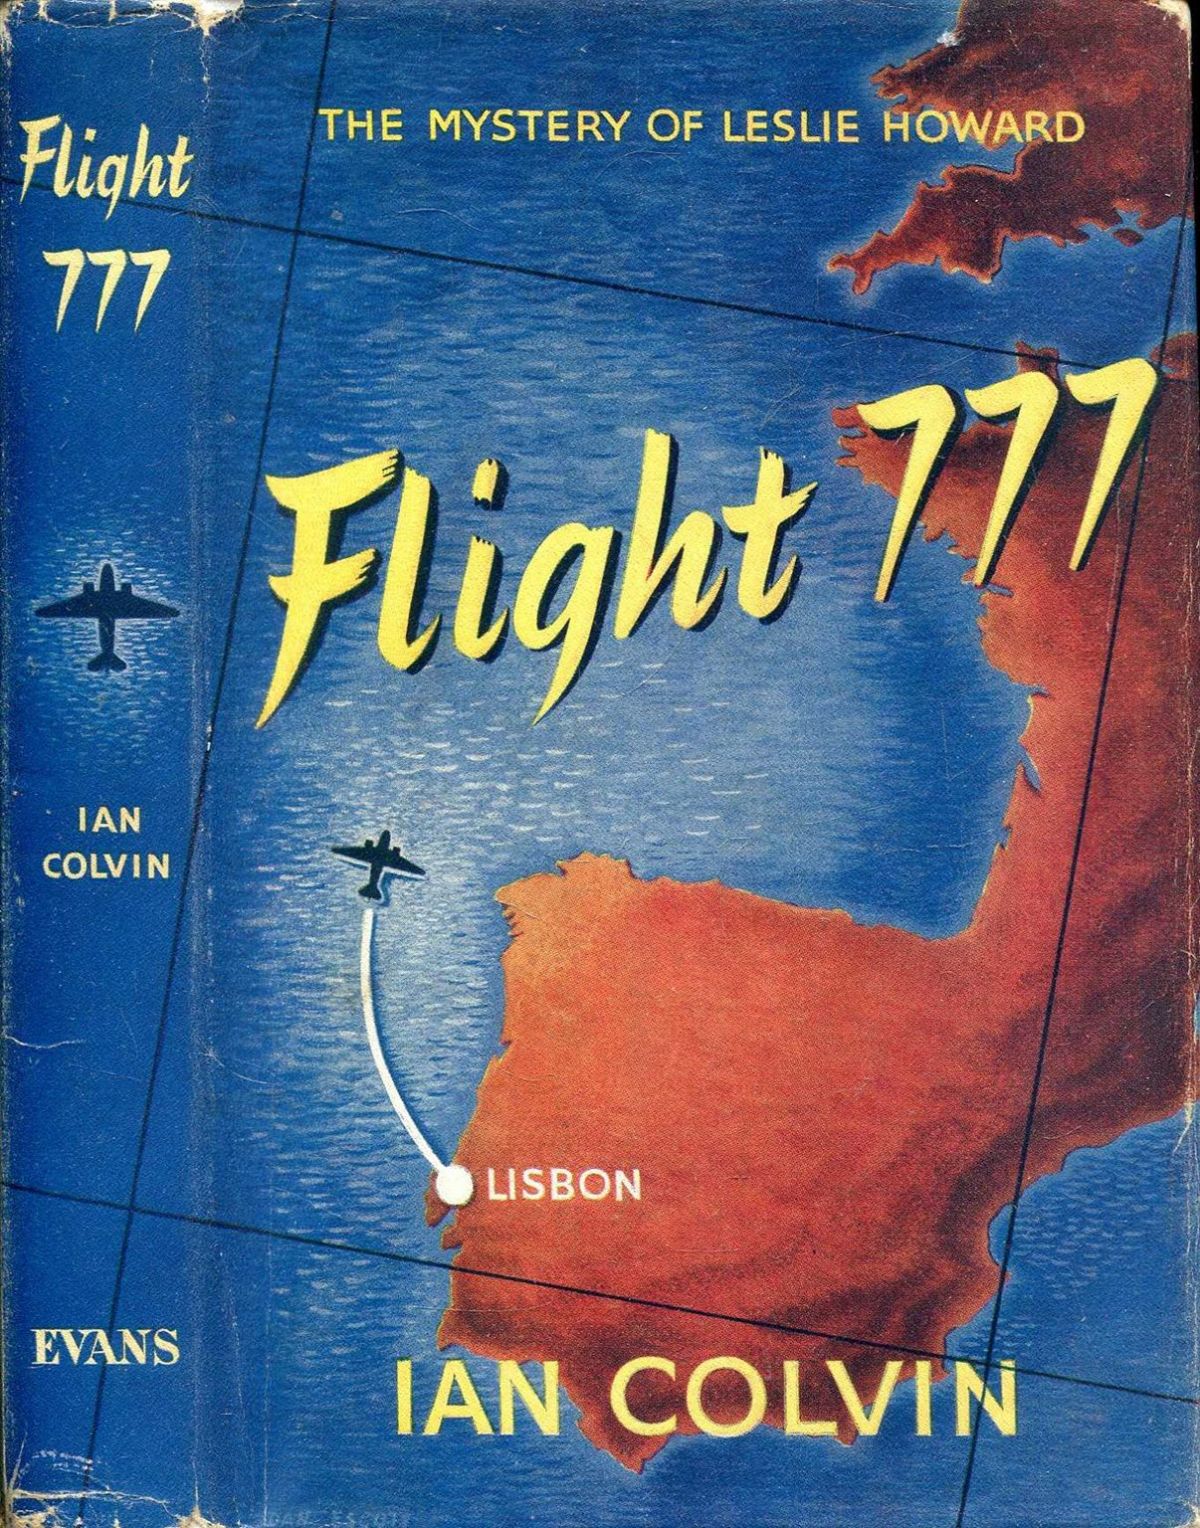 FLIGHT 777